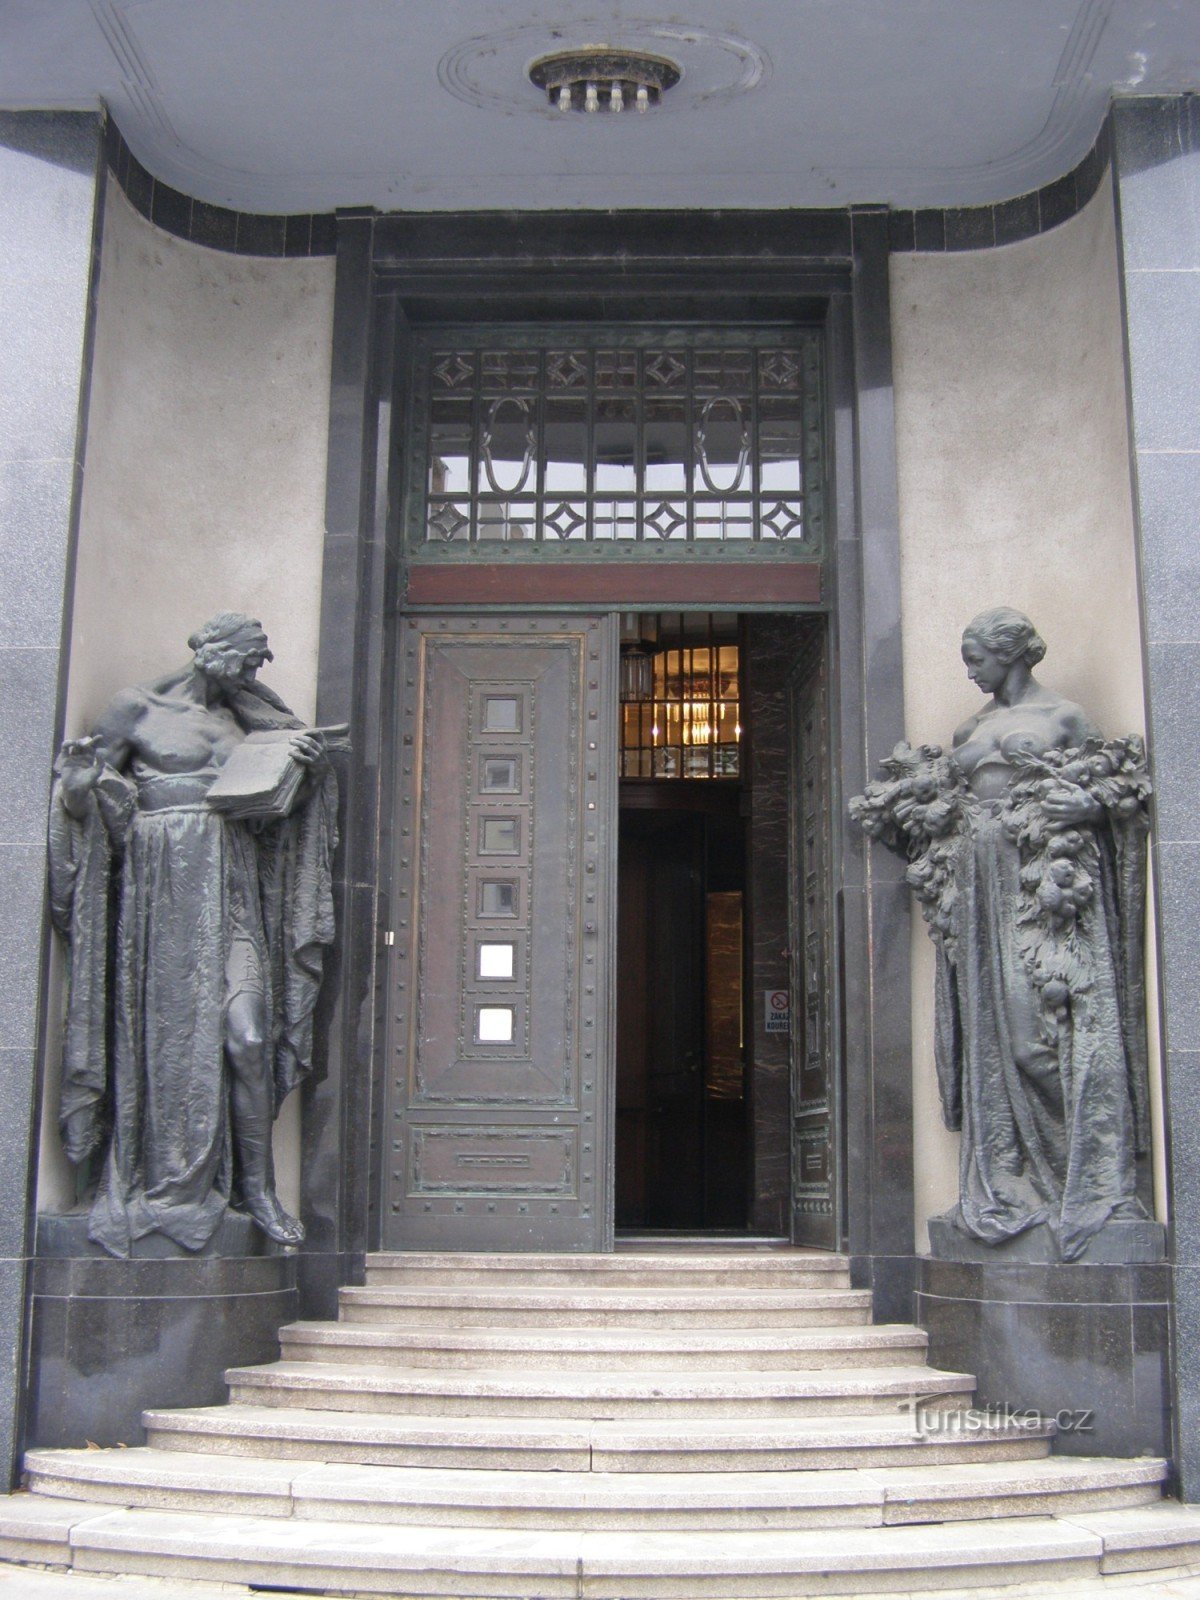 Hradec Králové - Gallery of Modern Art